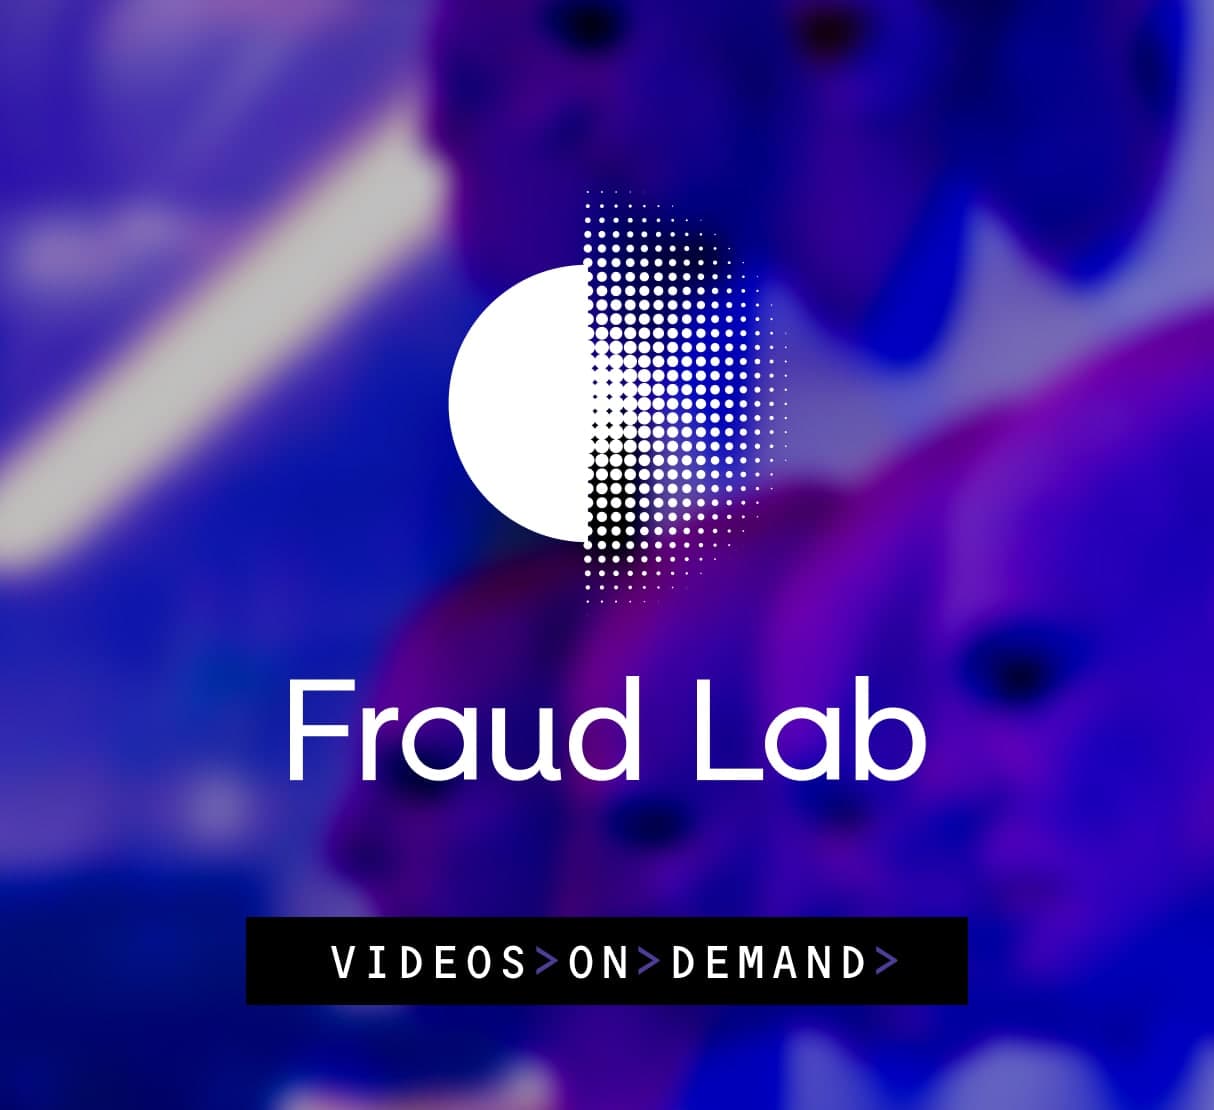 Fraud Lab: Videos on Demand